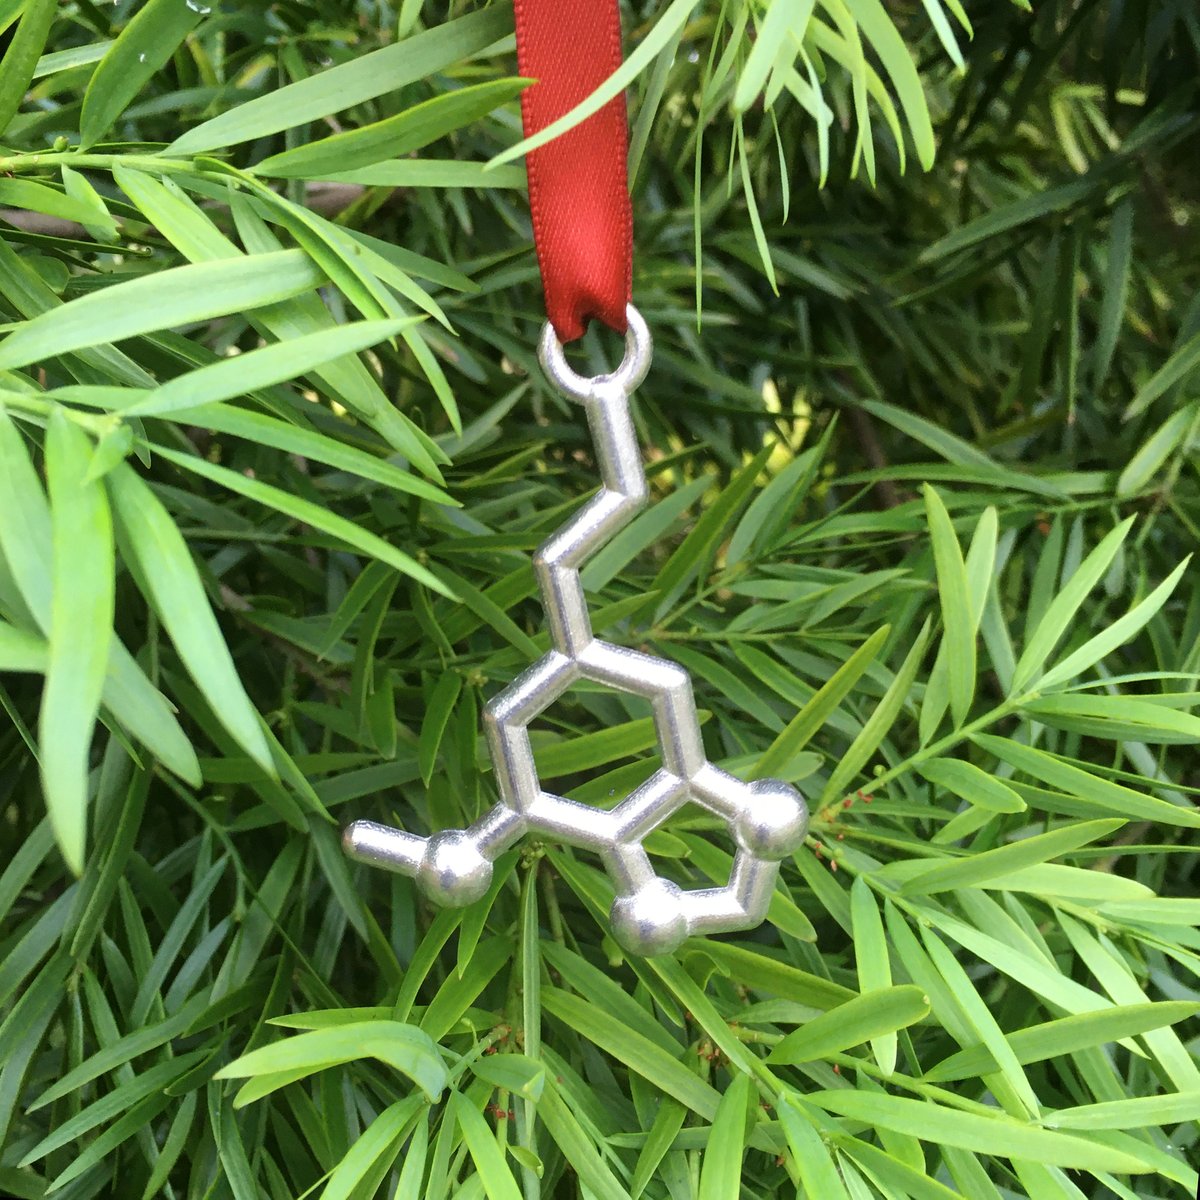 Image of myristicin ornament